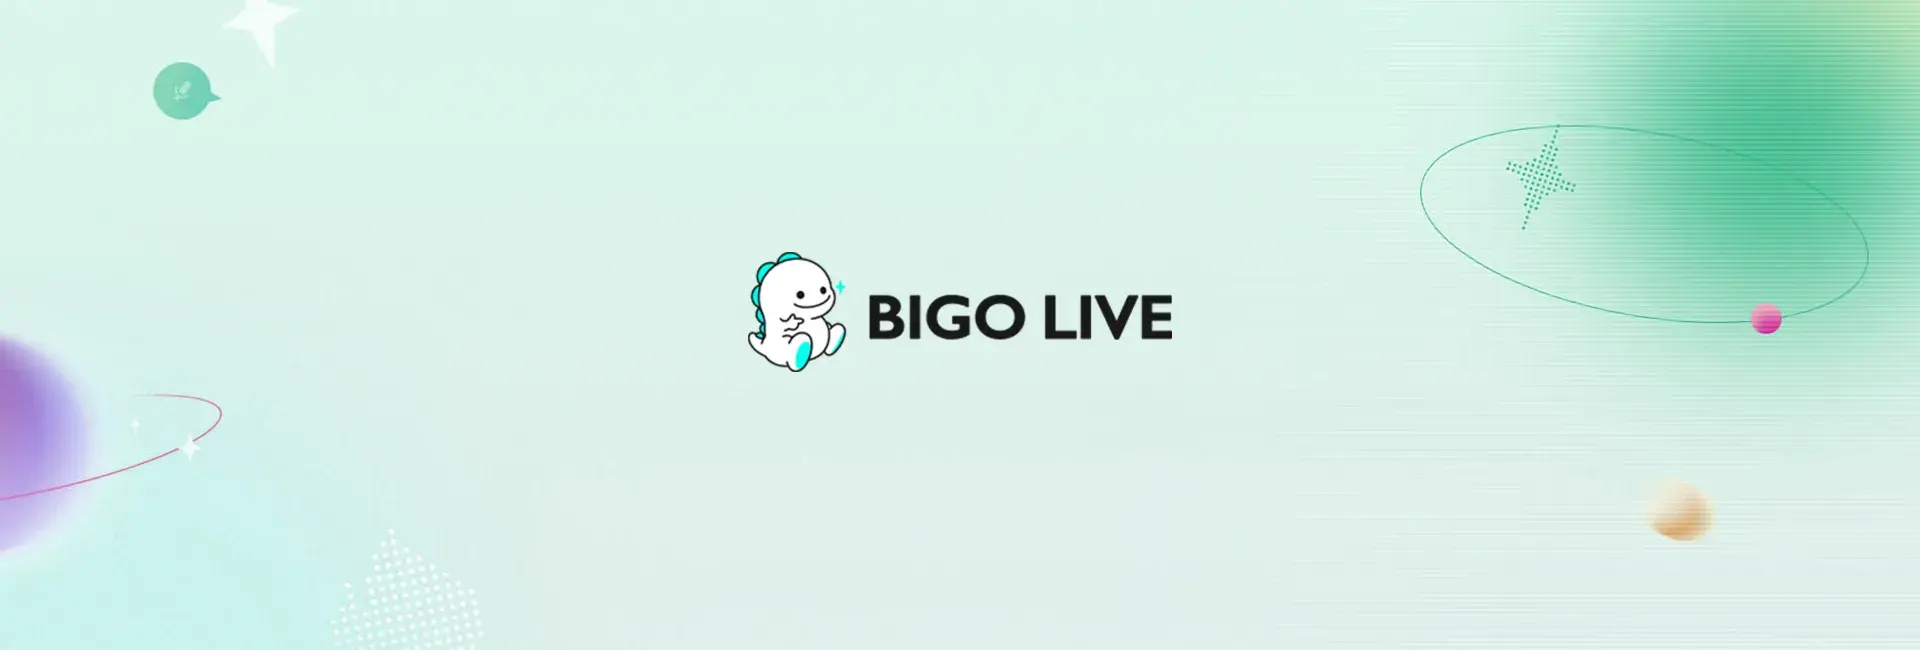 Bigo Live - 4725 Diamonds (Global)	